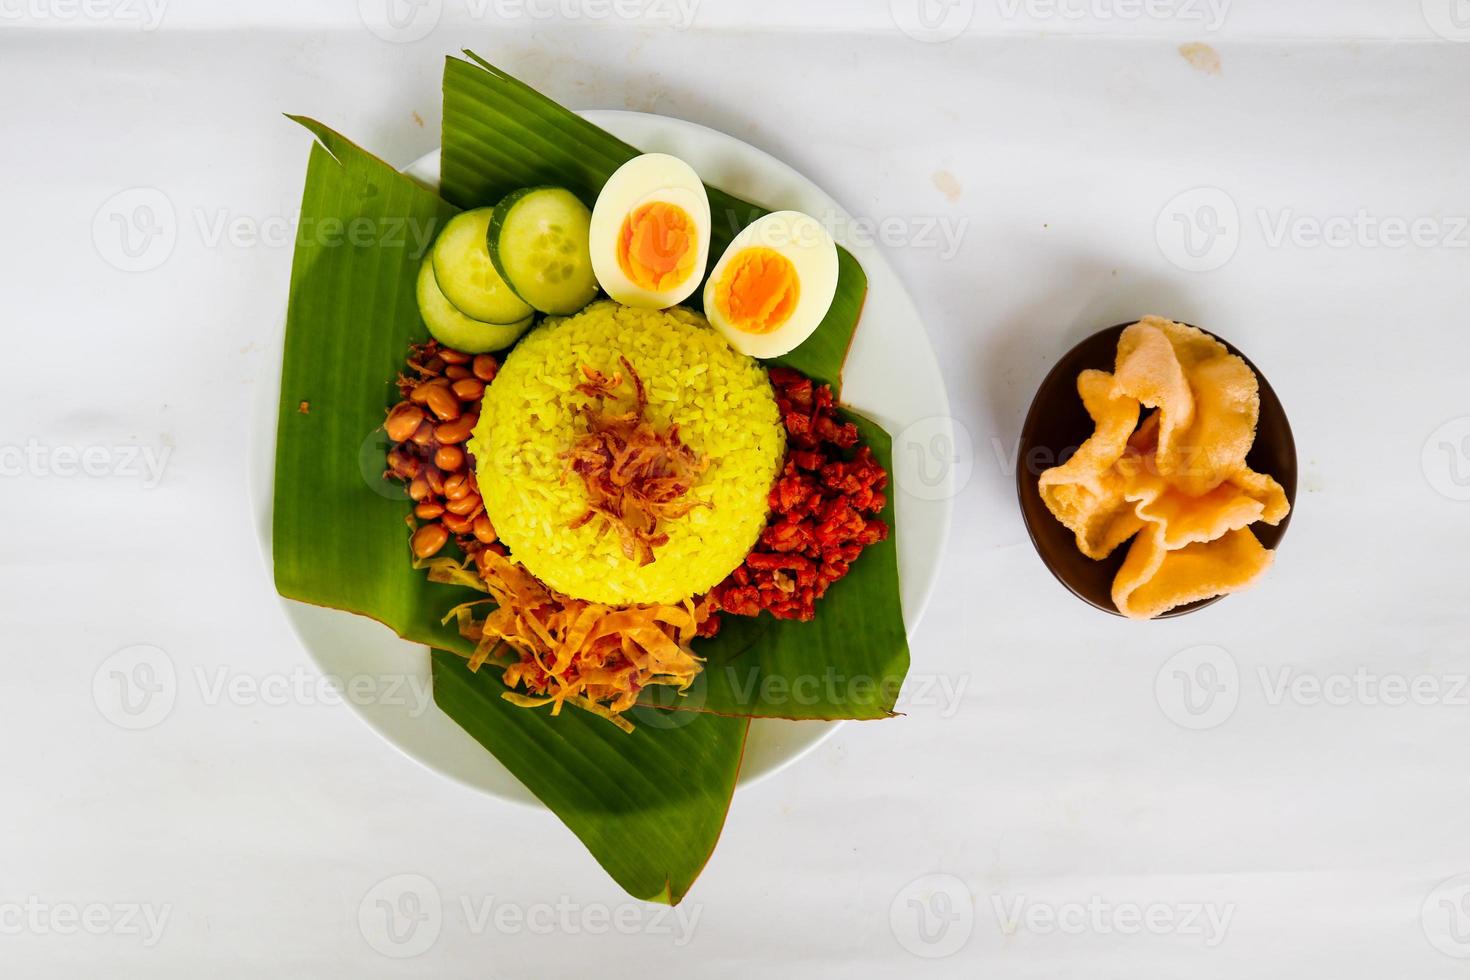 nasi kuning ou arroz amarelo ou tumeric rice é um alimento tradicional da Ásia, feito de arroz cozido com açafrão, leite de coco r foto